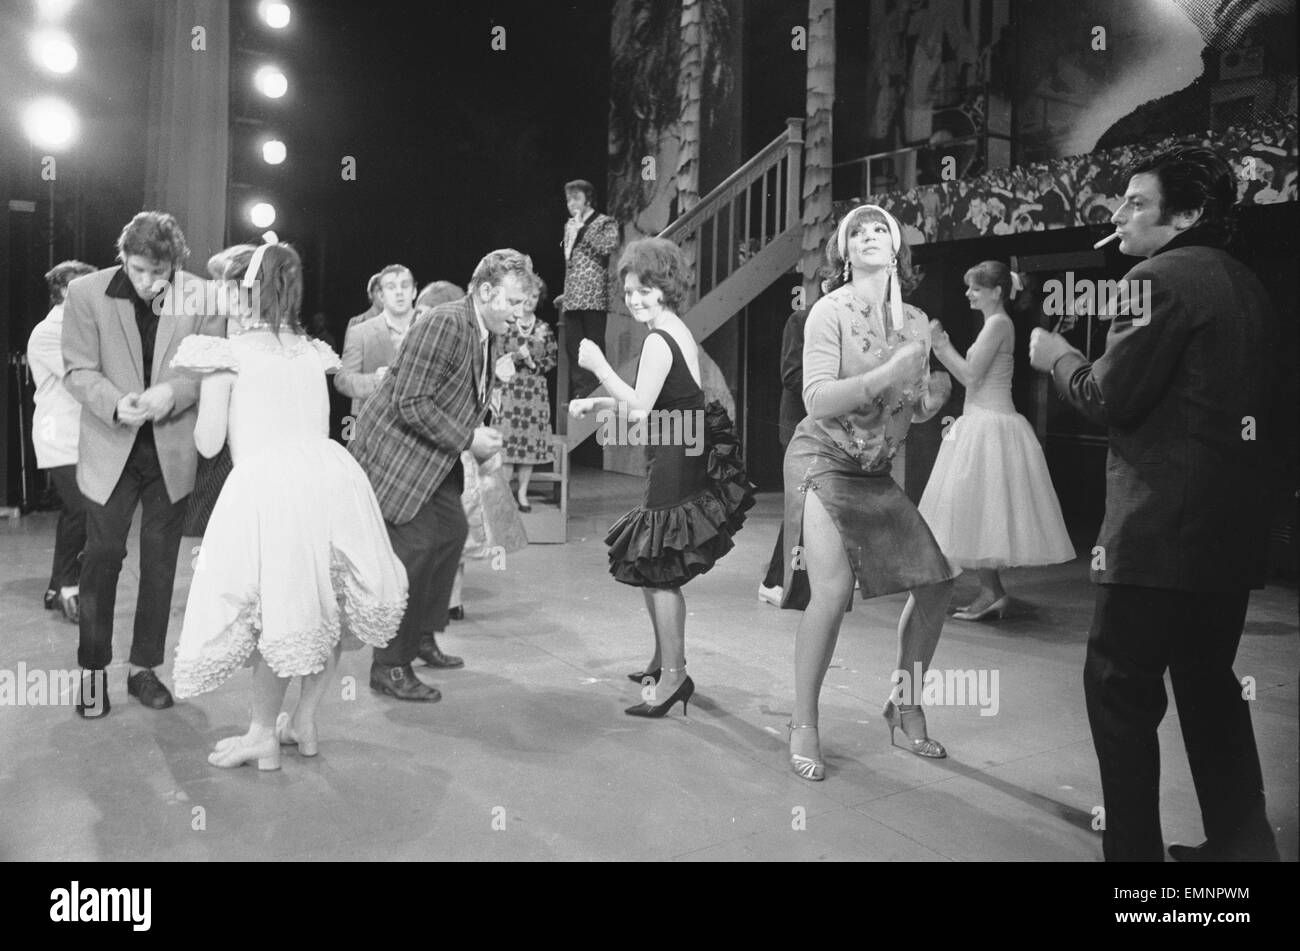 Richard Gere comme Danny Zuko (à gauche) vu ici sur la scène du Théâtre de Coventry pendant une répétition générale pour la graisse. Le spectacle musical situé dans les années 1950 est la tournée des provinces avant d'aller dans le West End de Londres. 30 Mai 1973 Banque D'Images